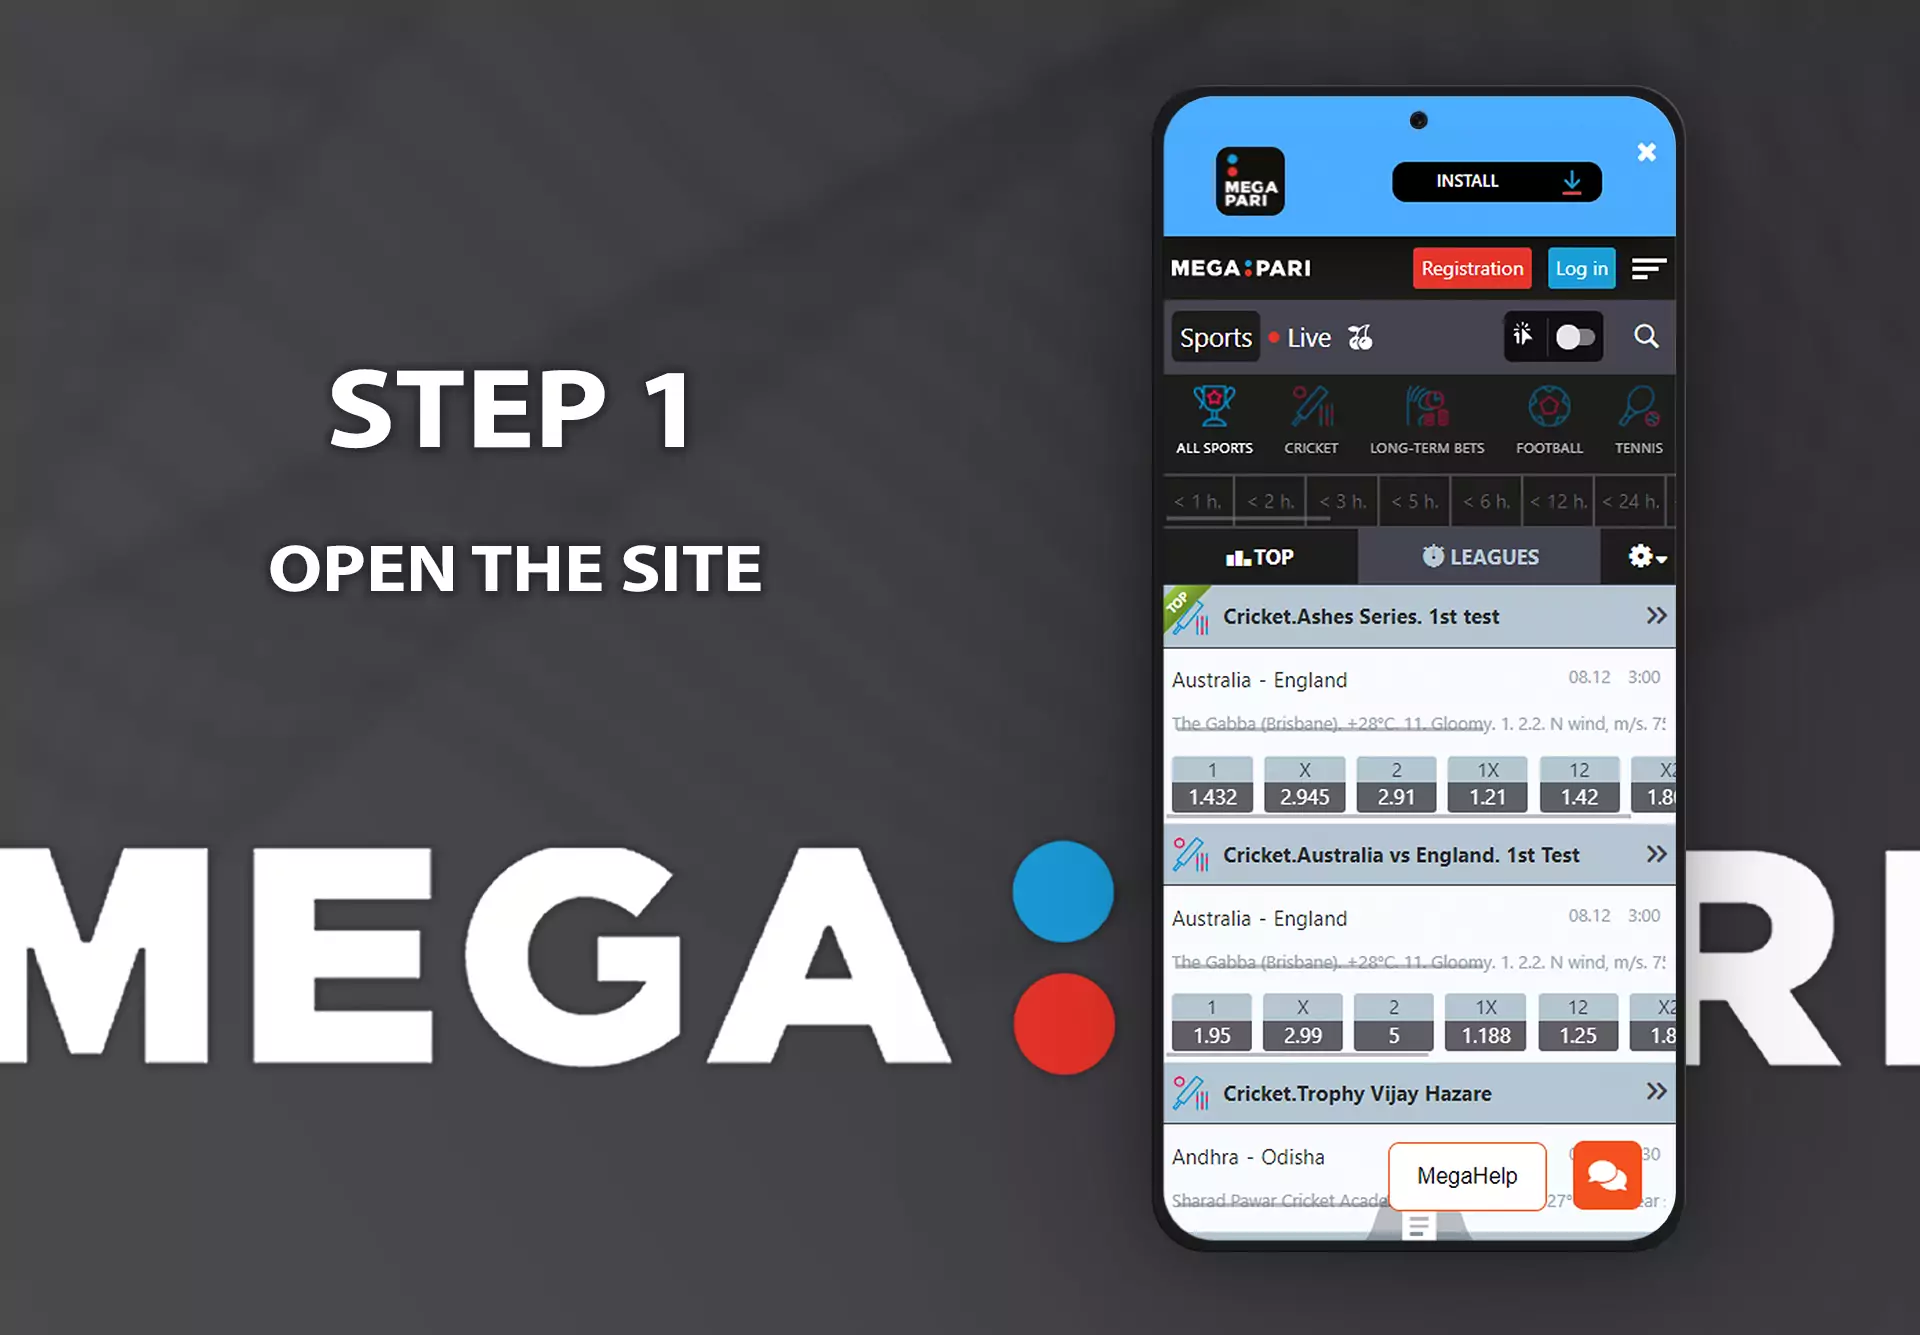 अपने डिवाइस पर एक ब्राउज़र में Megapari साइट का होमपेज खोलें।